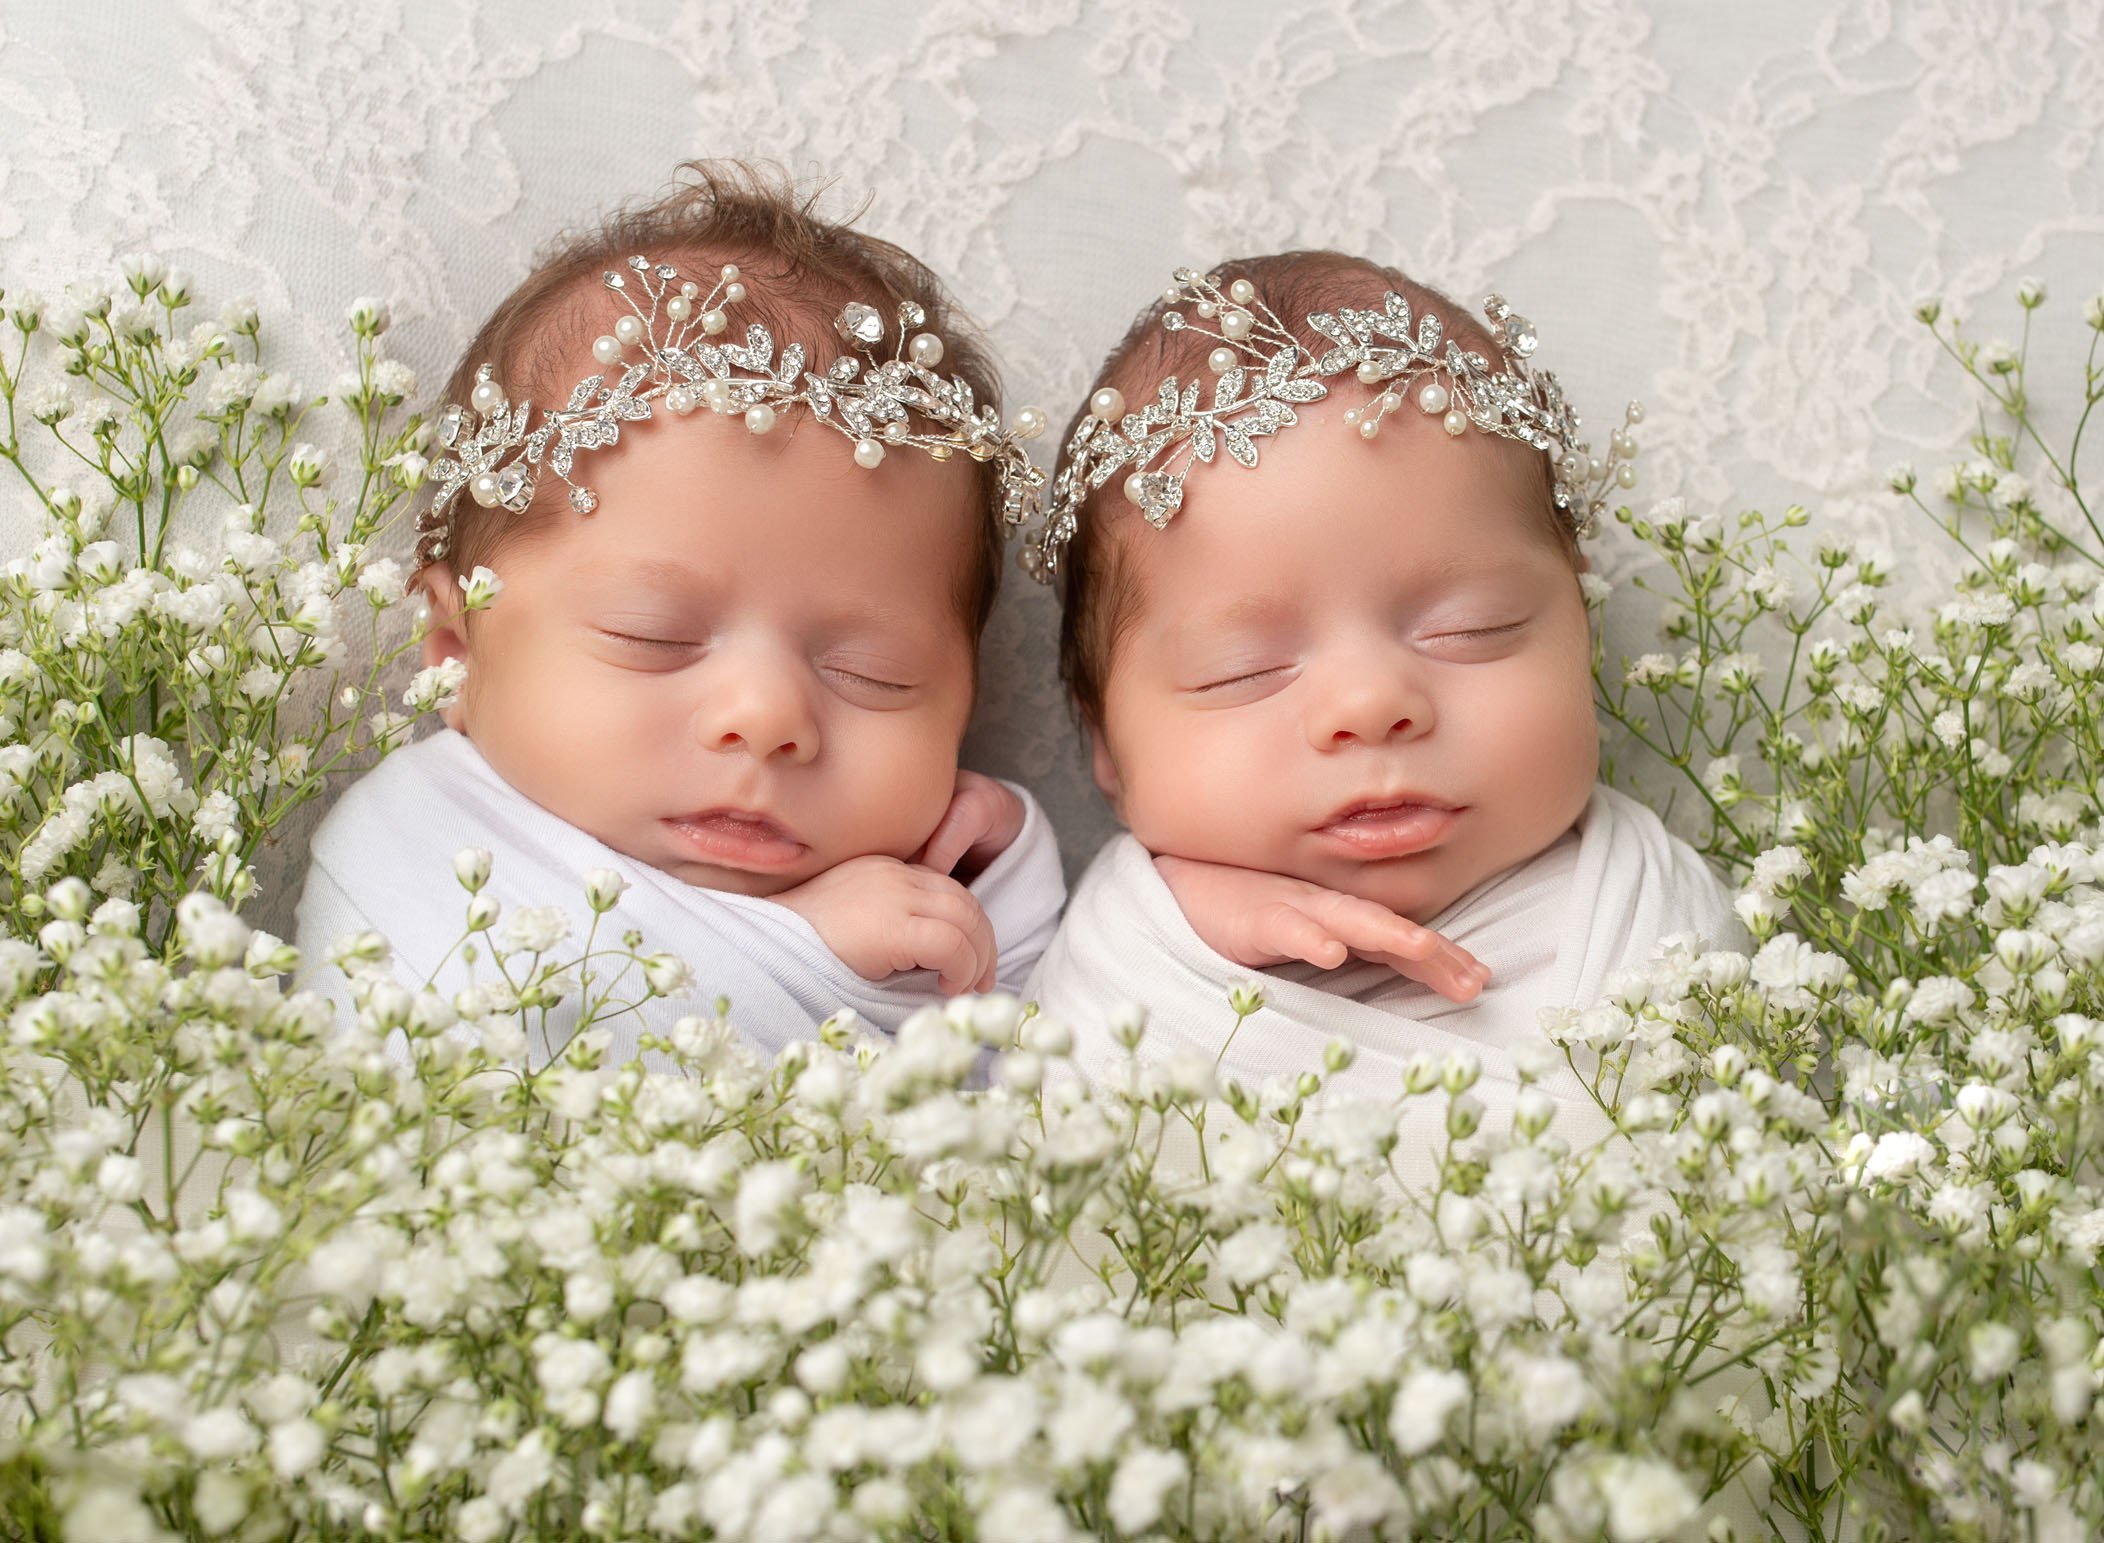 Elizabeth And Lilly Identical Twin Girls Newborn Session One Big